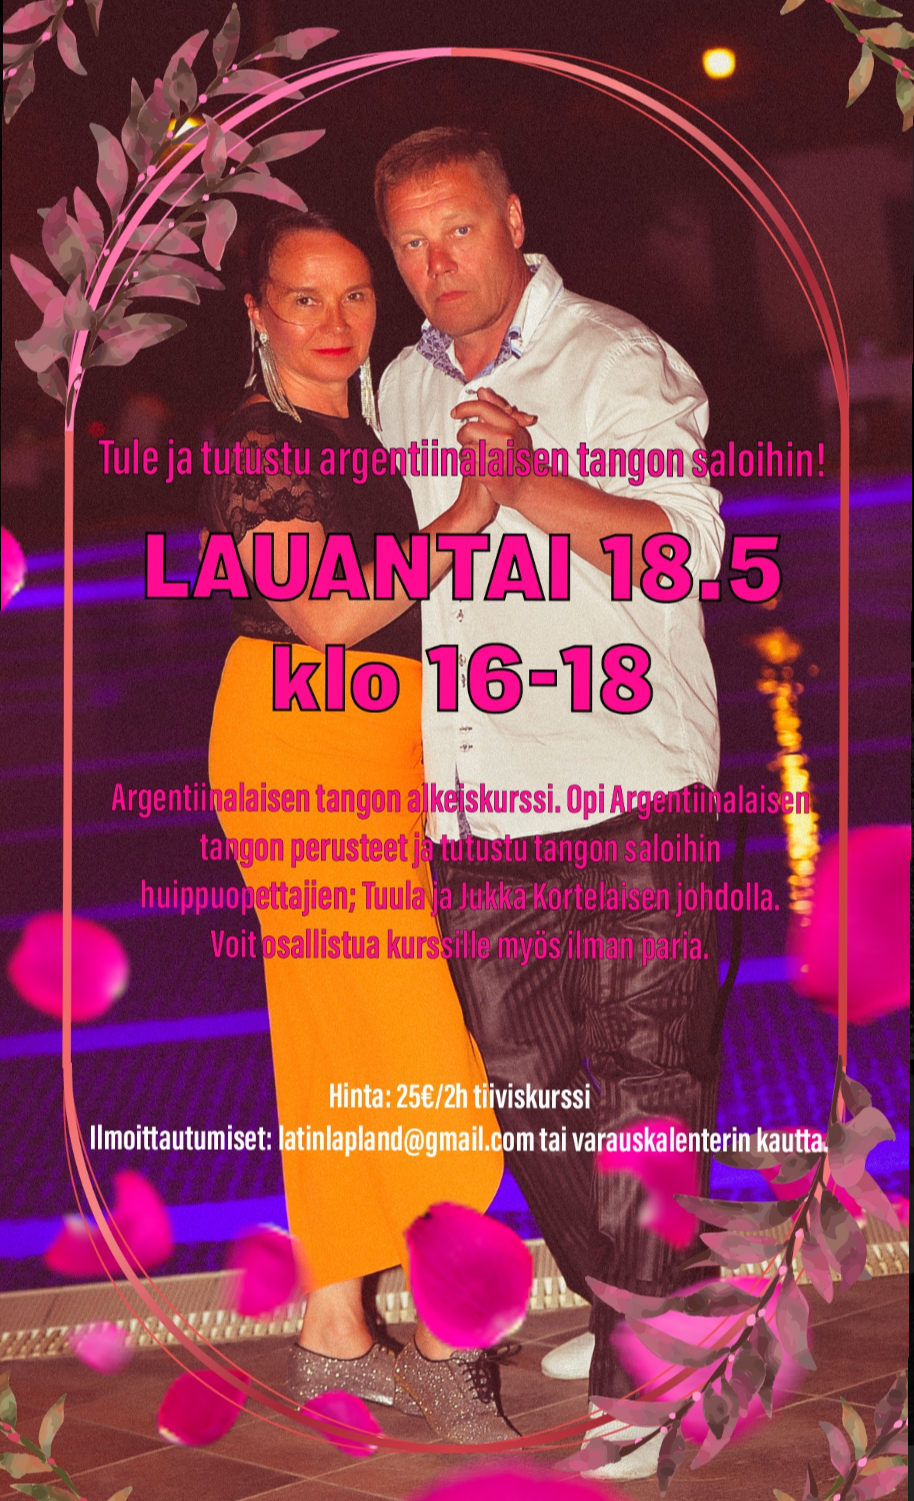 argentiinalainen tango, tanssikurssi, latinlapland, latin lapland, tanssi rovaniemi, tango rovaniemi, tanssikurssi lapissa, tango, tango tunnit, alkeiskurssi